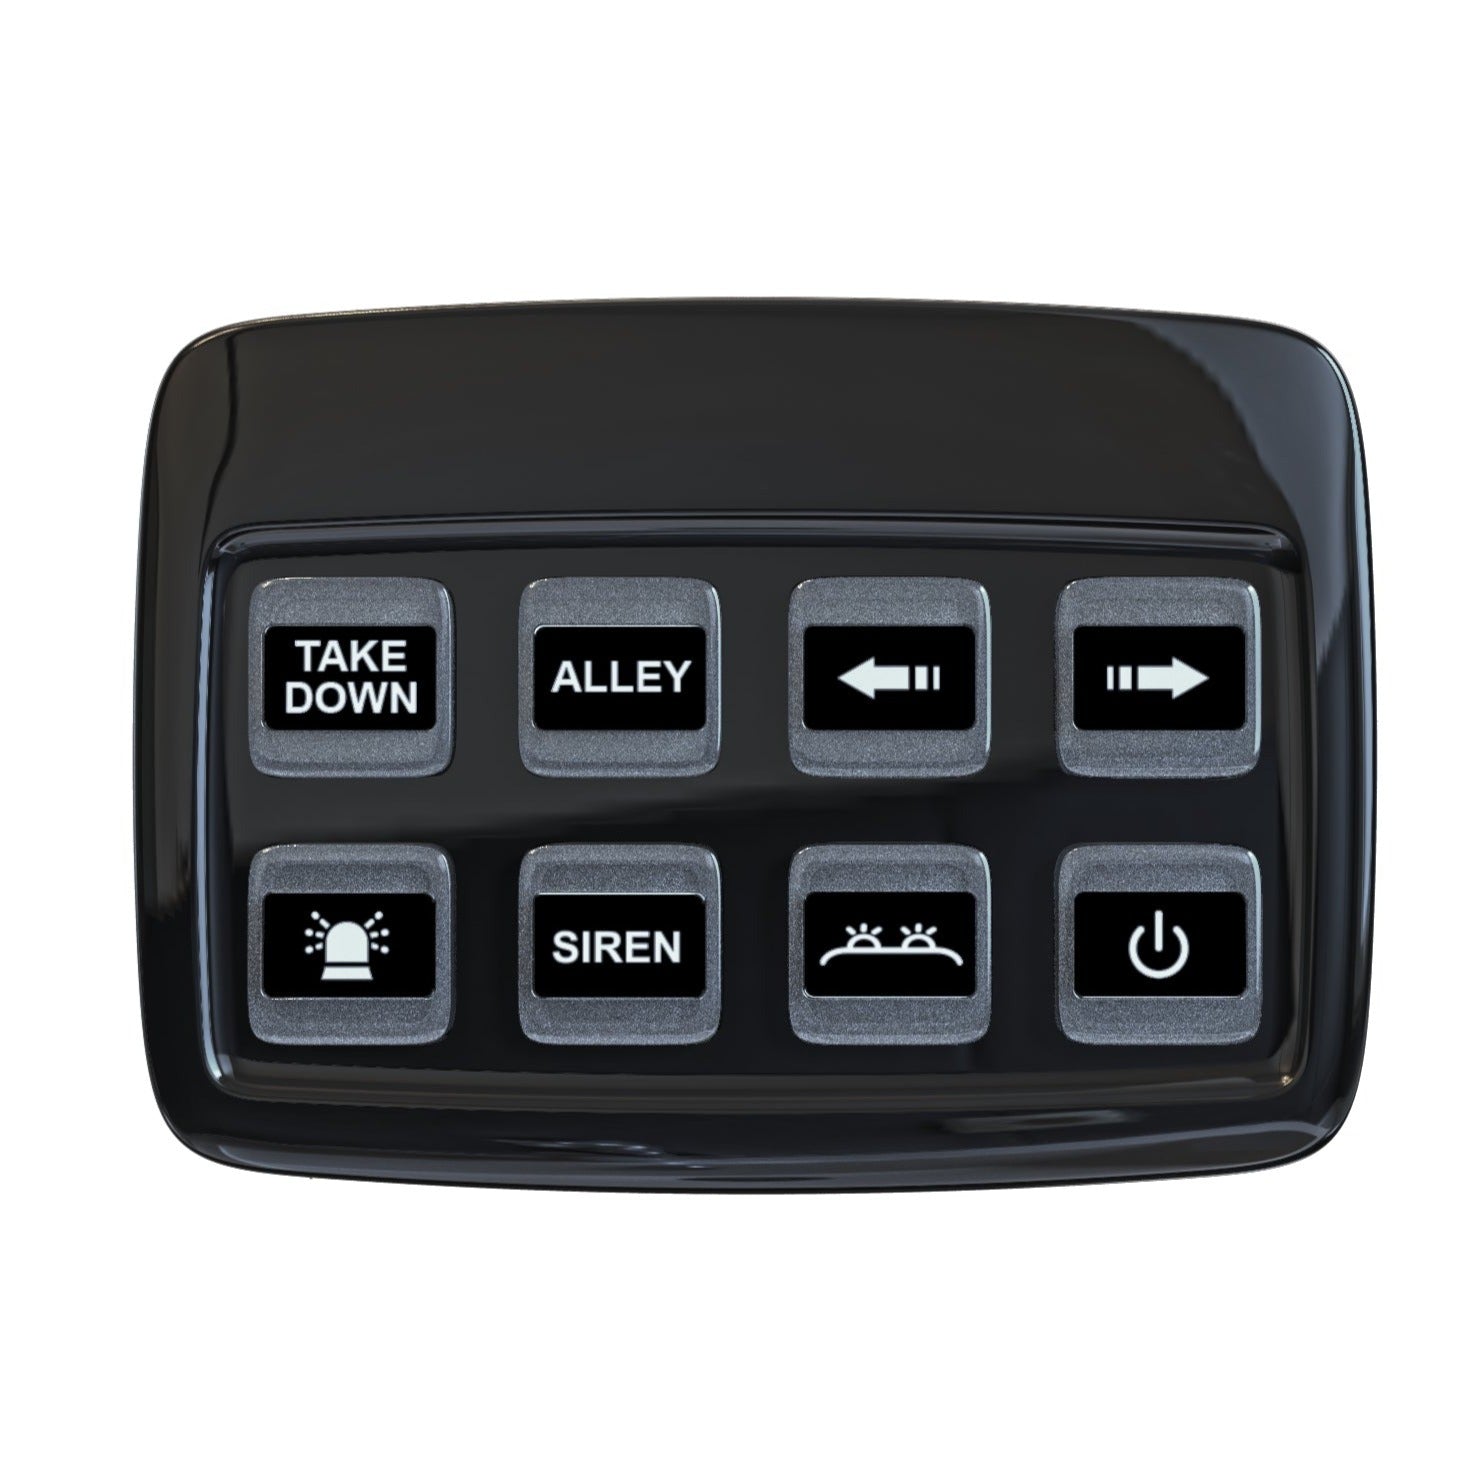 Tauler de control de 8 botons i mòdul d'alimentació / Muntatge de cargols - spo-cs-disabled - spo-default - spo-disabled - spo-notify-me-disab